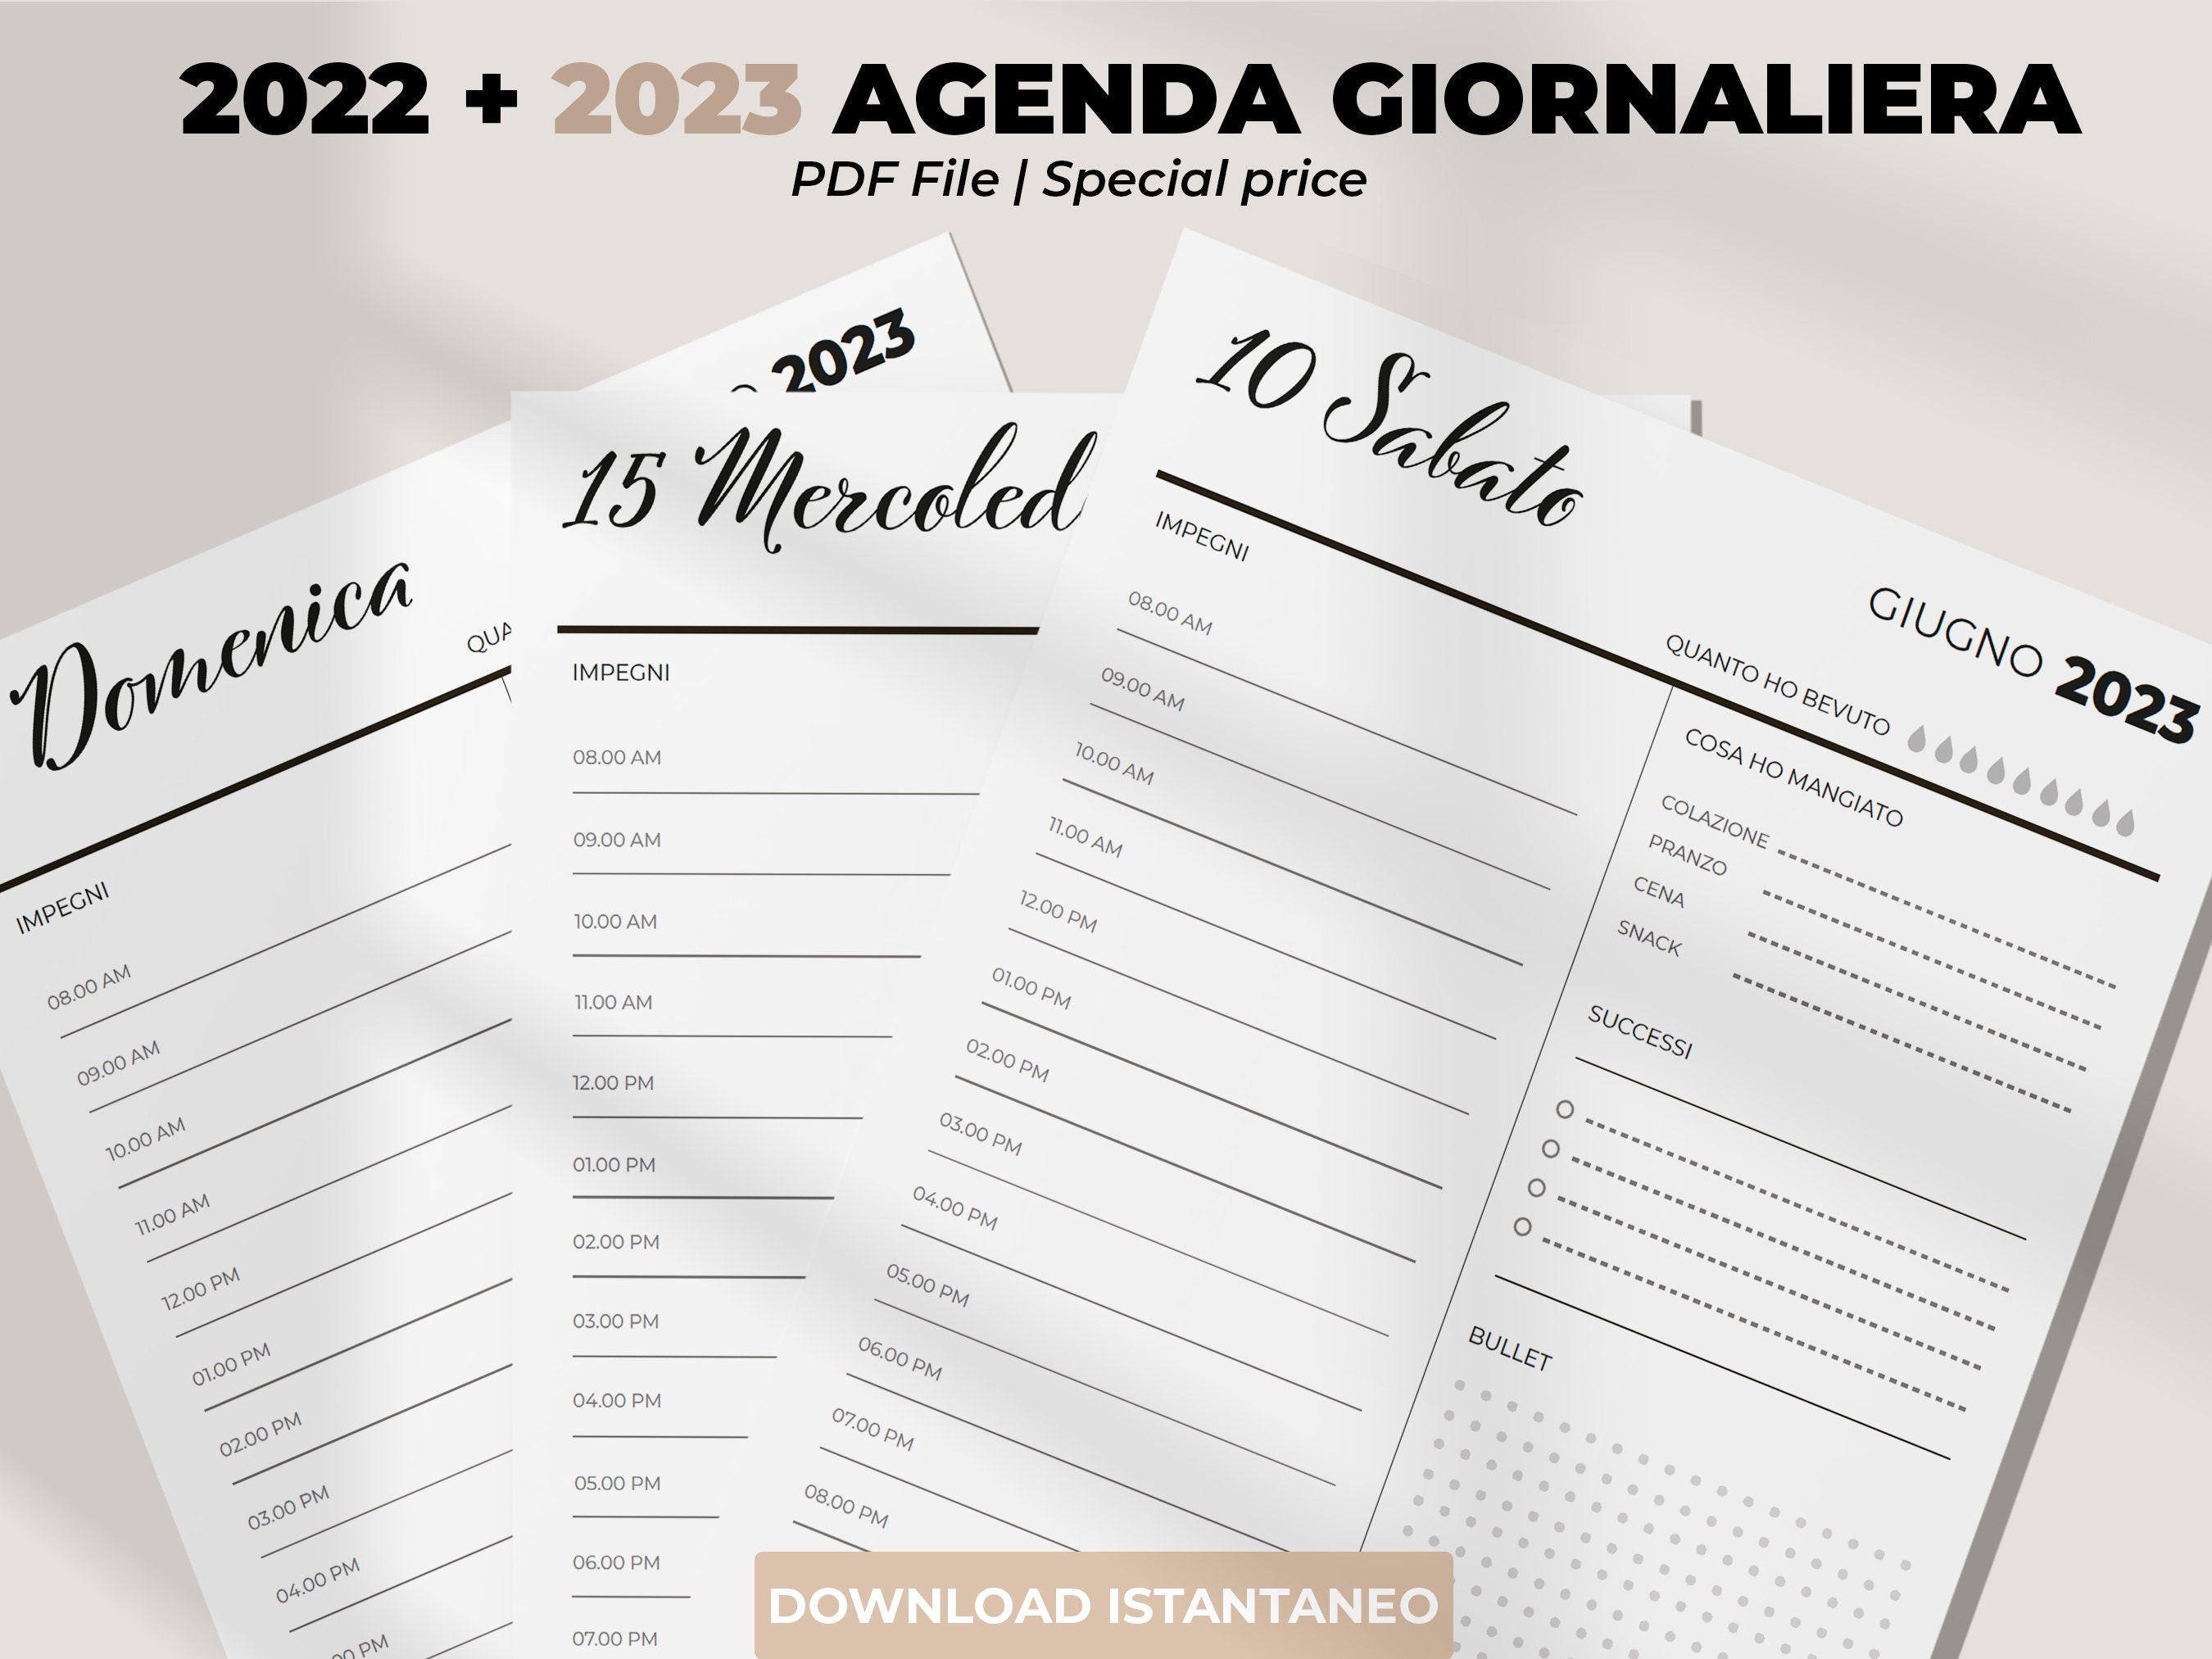 L'agenda 2023 : The Complete Planner - PDF